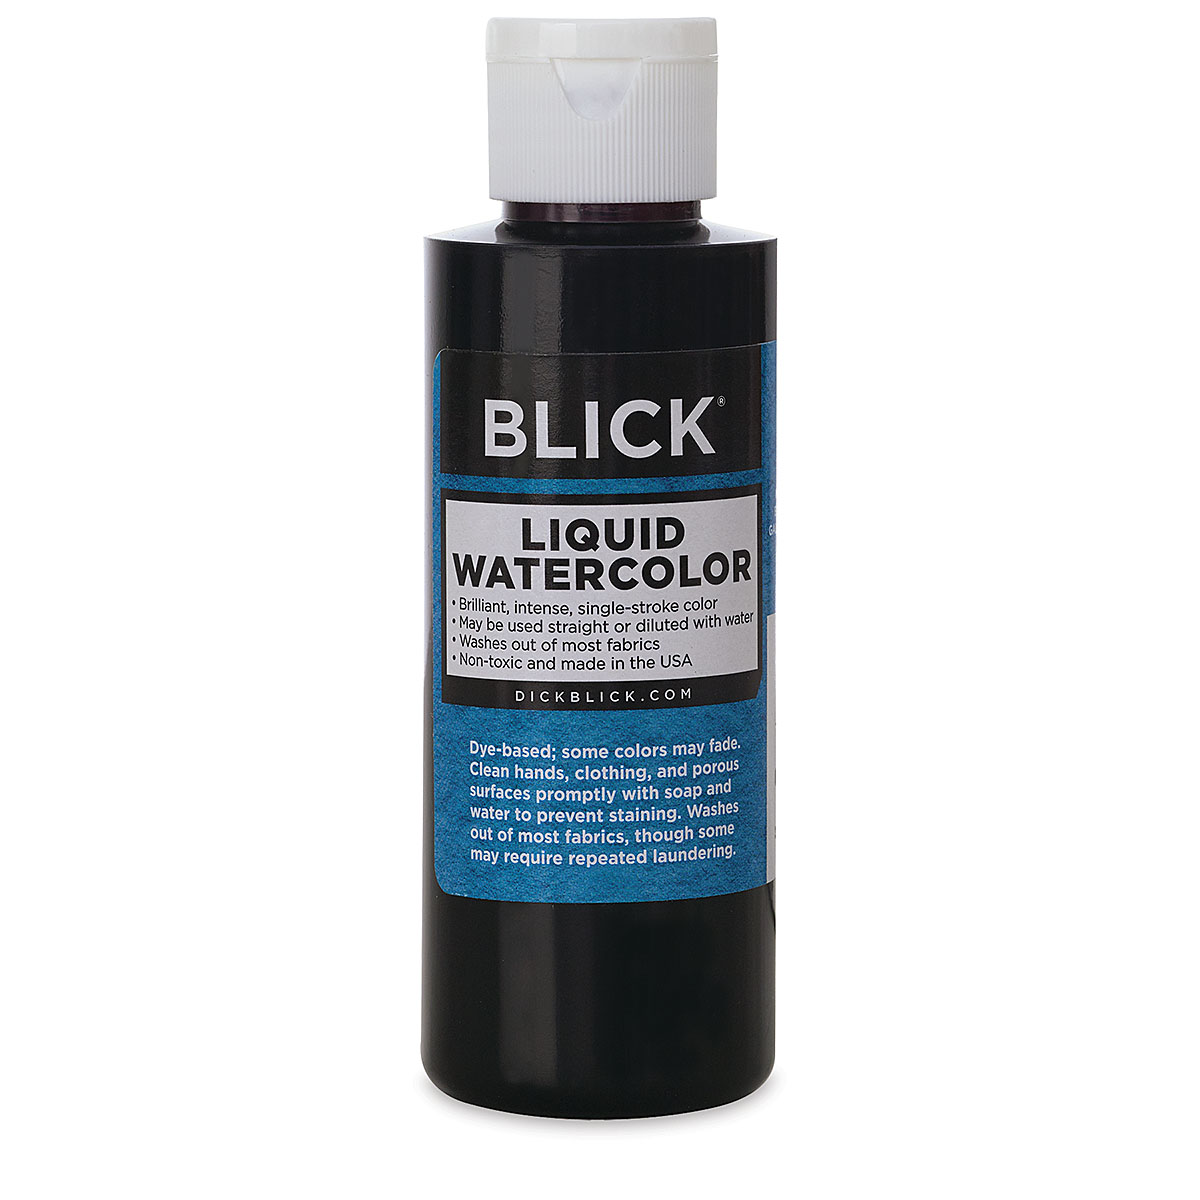 Blick Liquid Watercolor - Metallic Copper, 8 oz bottle